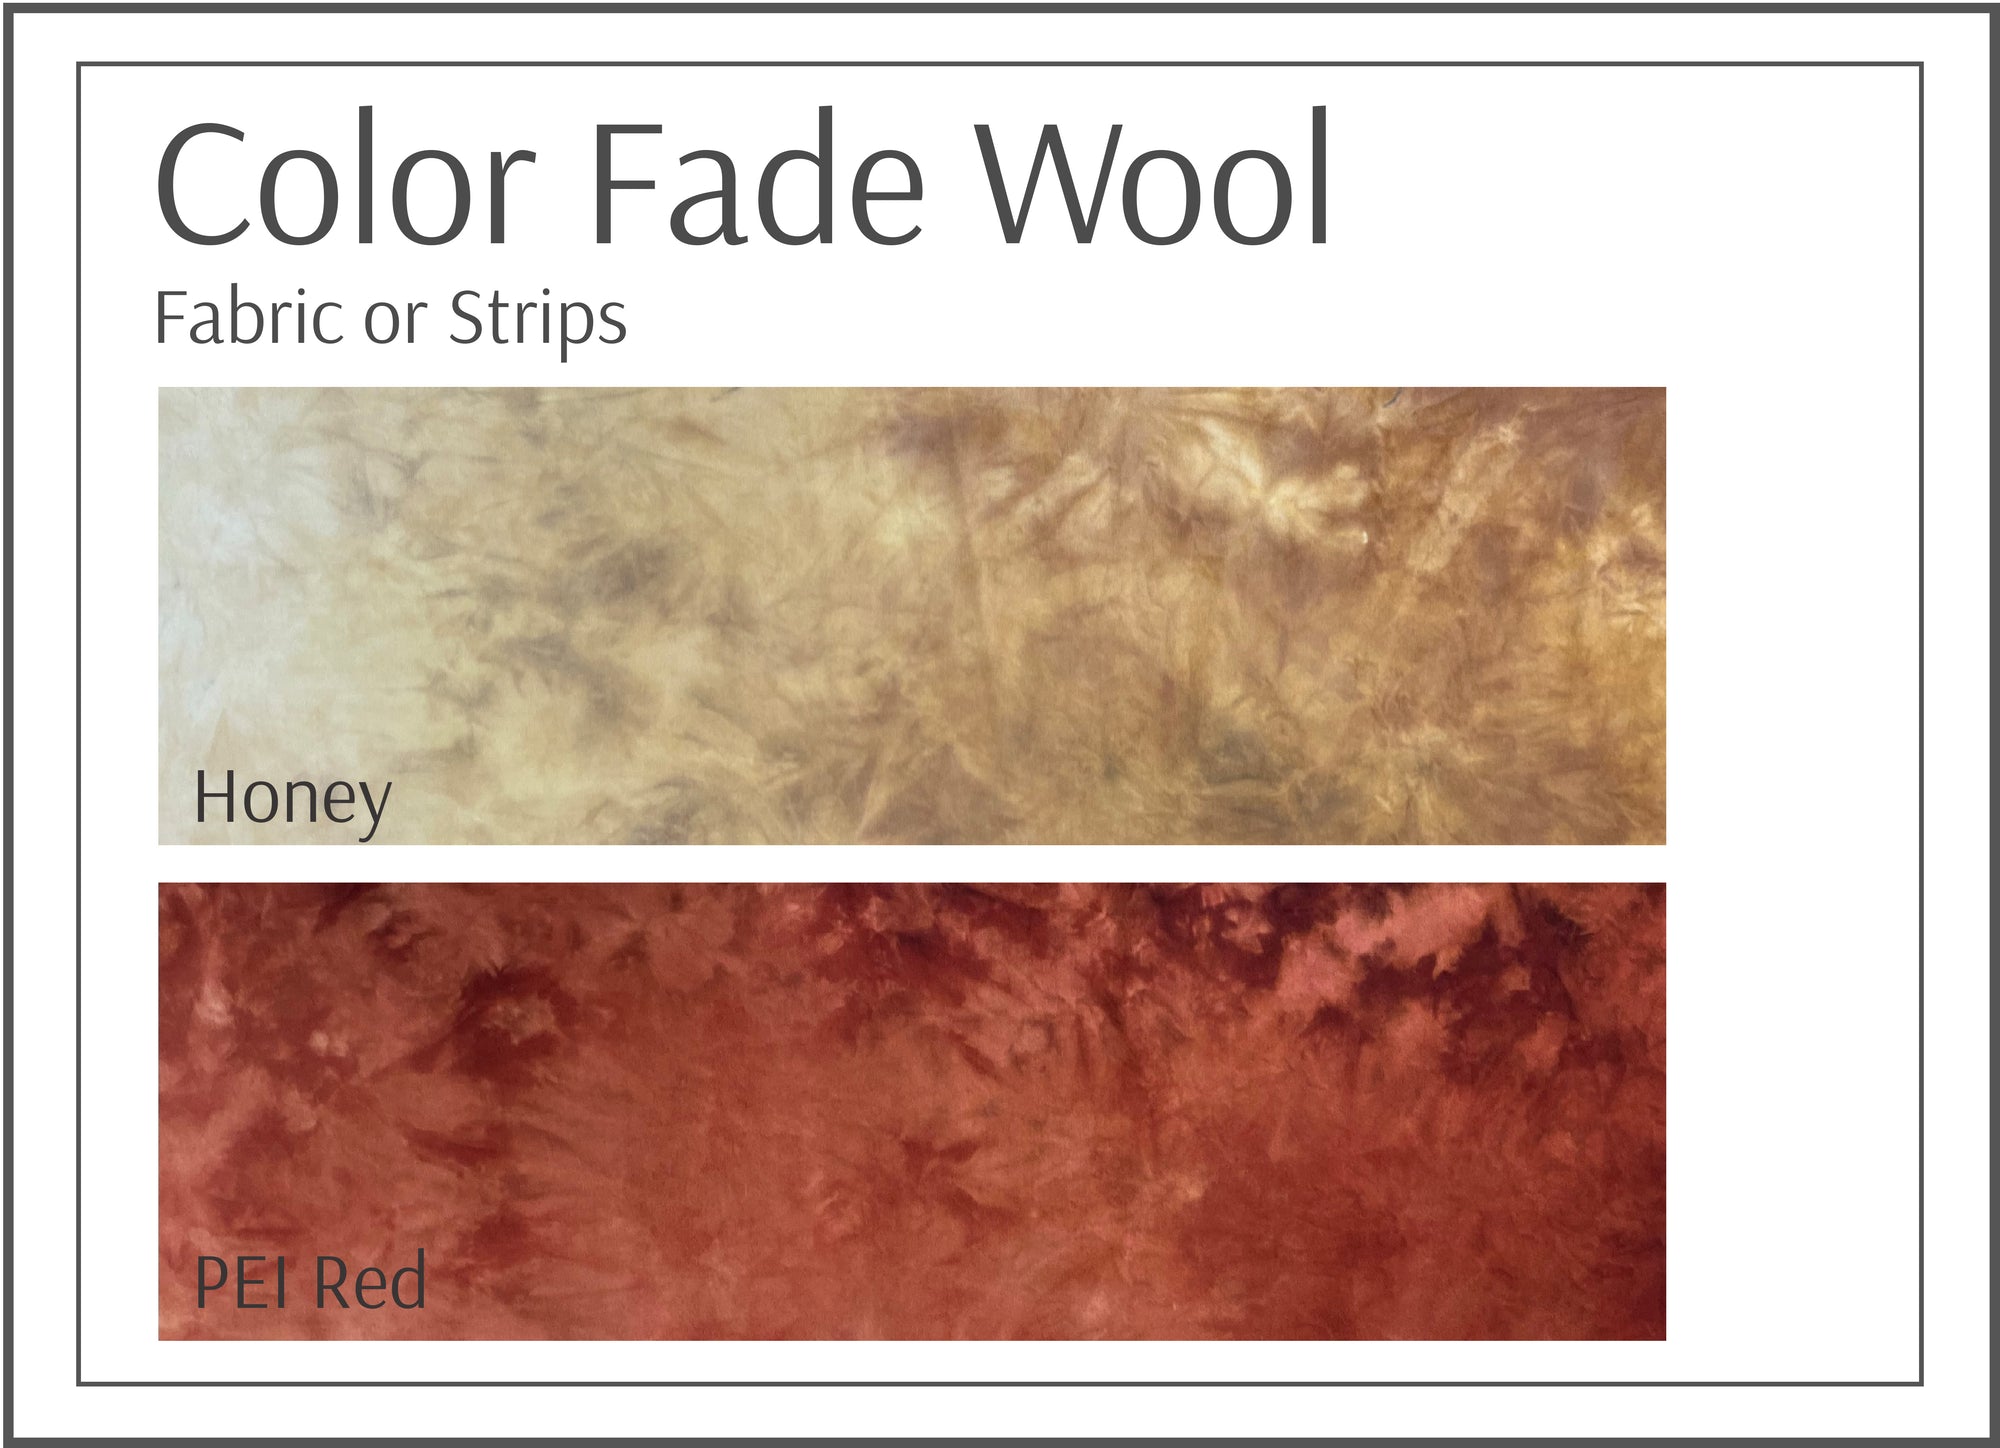 Color Fade Fabric Honey and PEI Reds